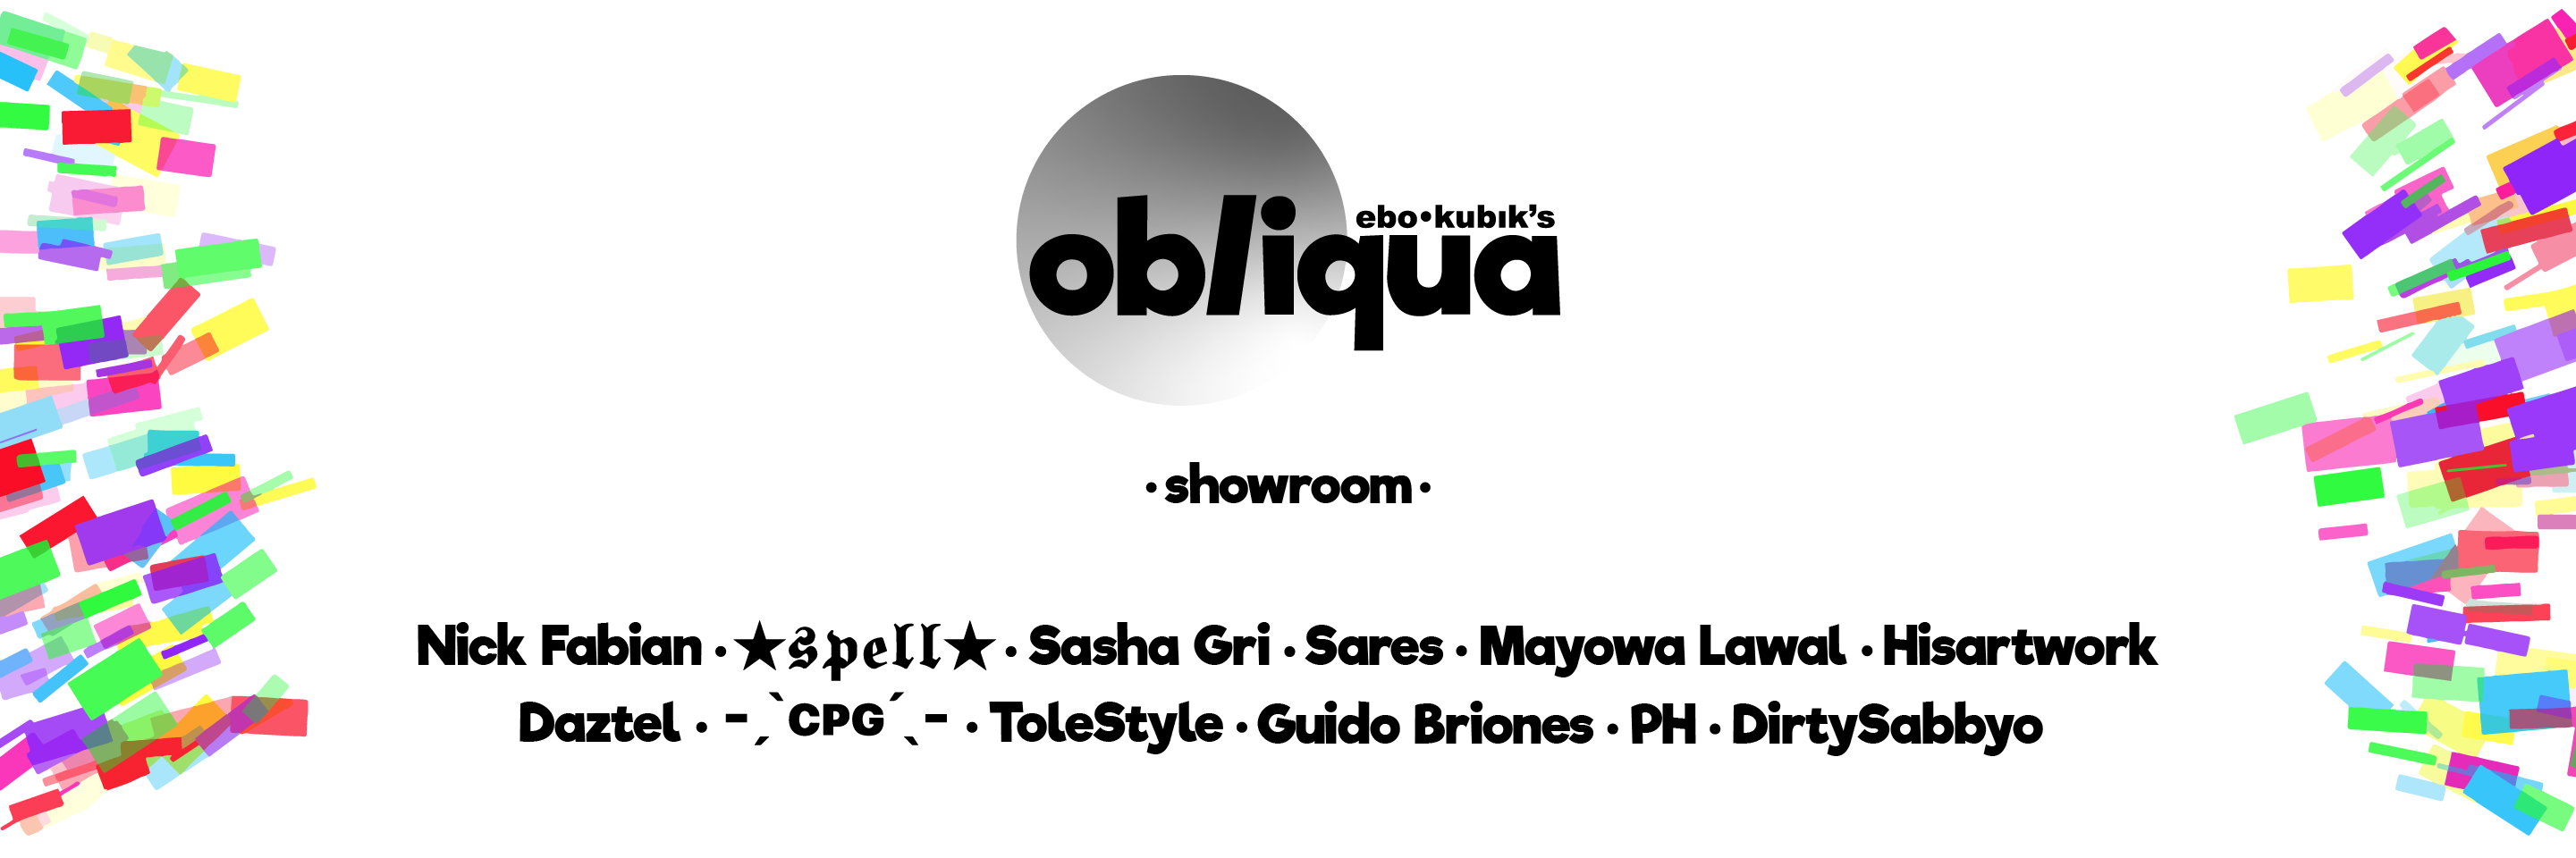 obliqua / showroom - reward badge